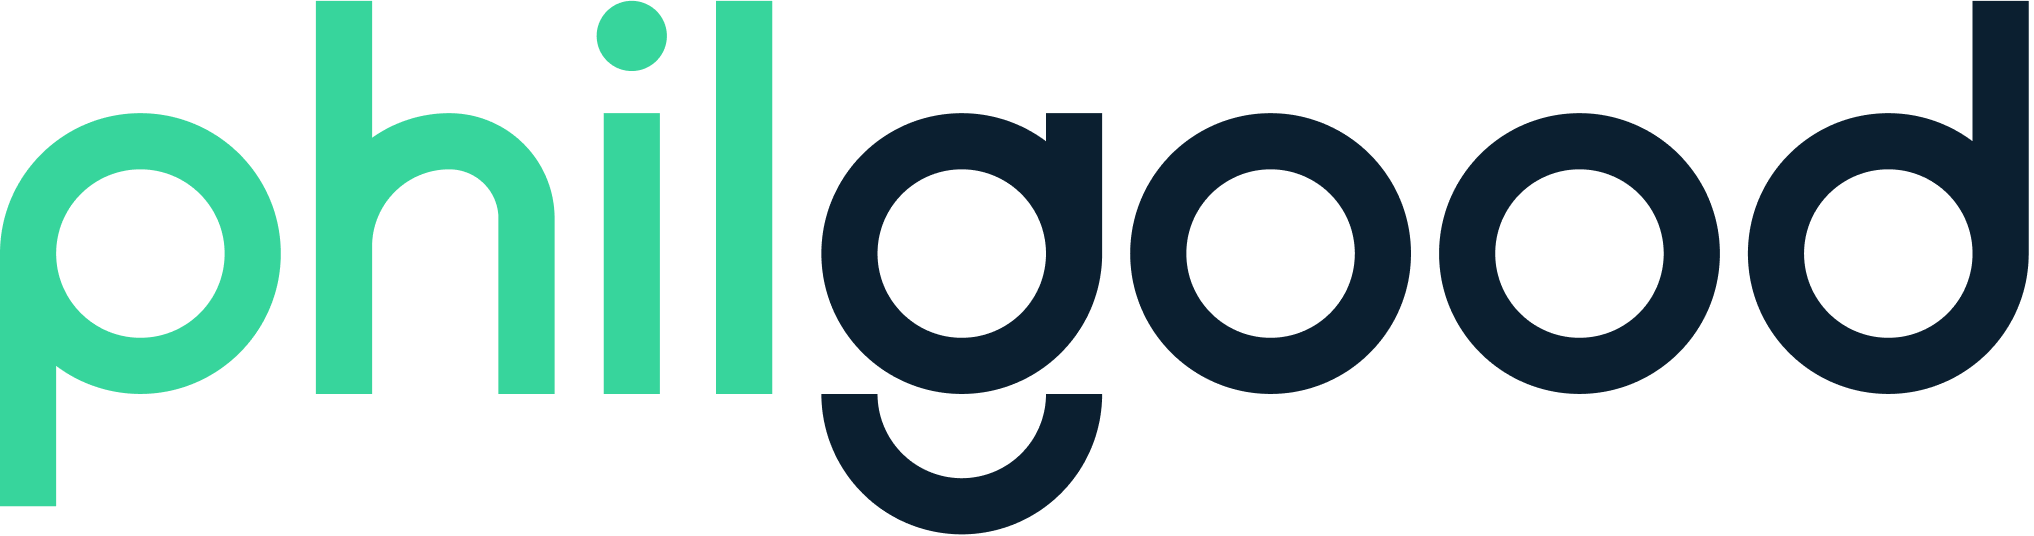 logo-philgood